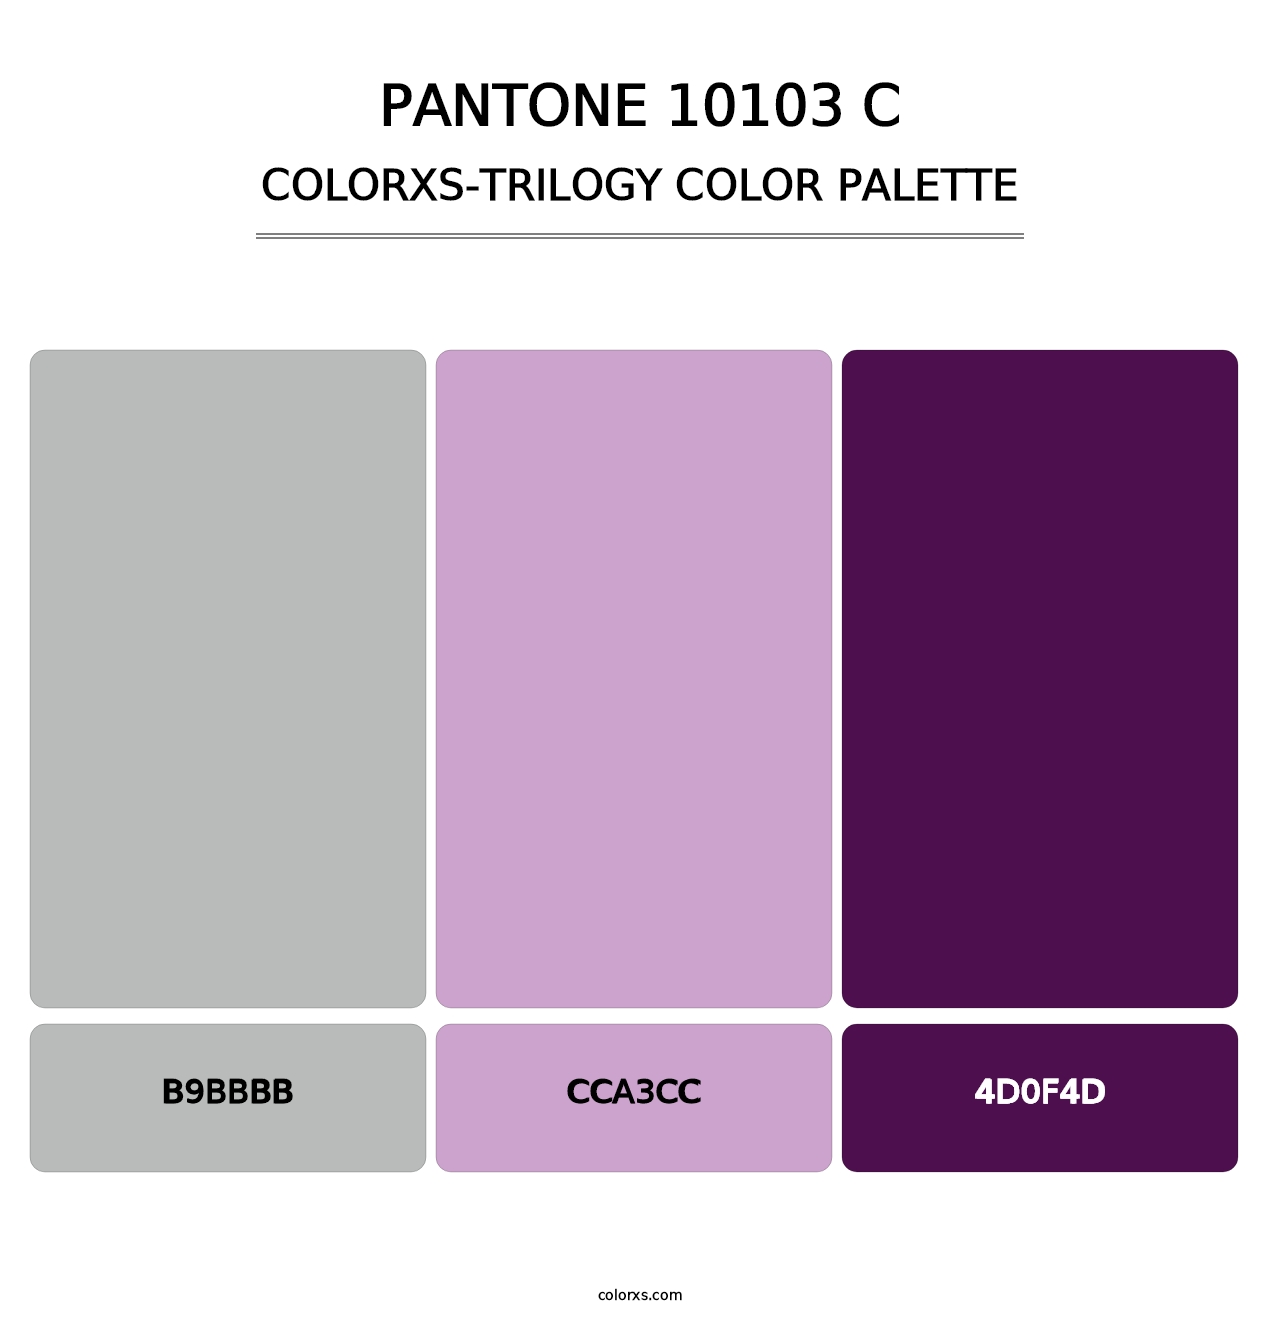 PANTONE 10103 C - Colorxs Trilogy Palette